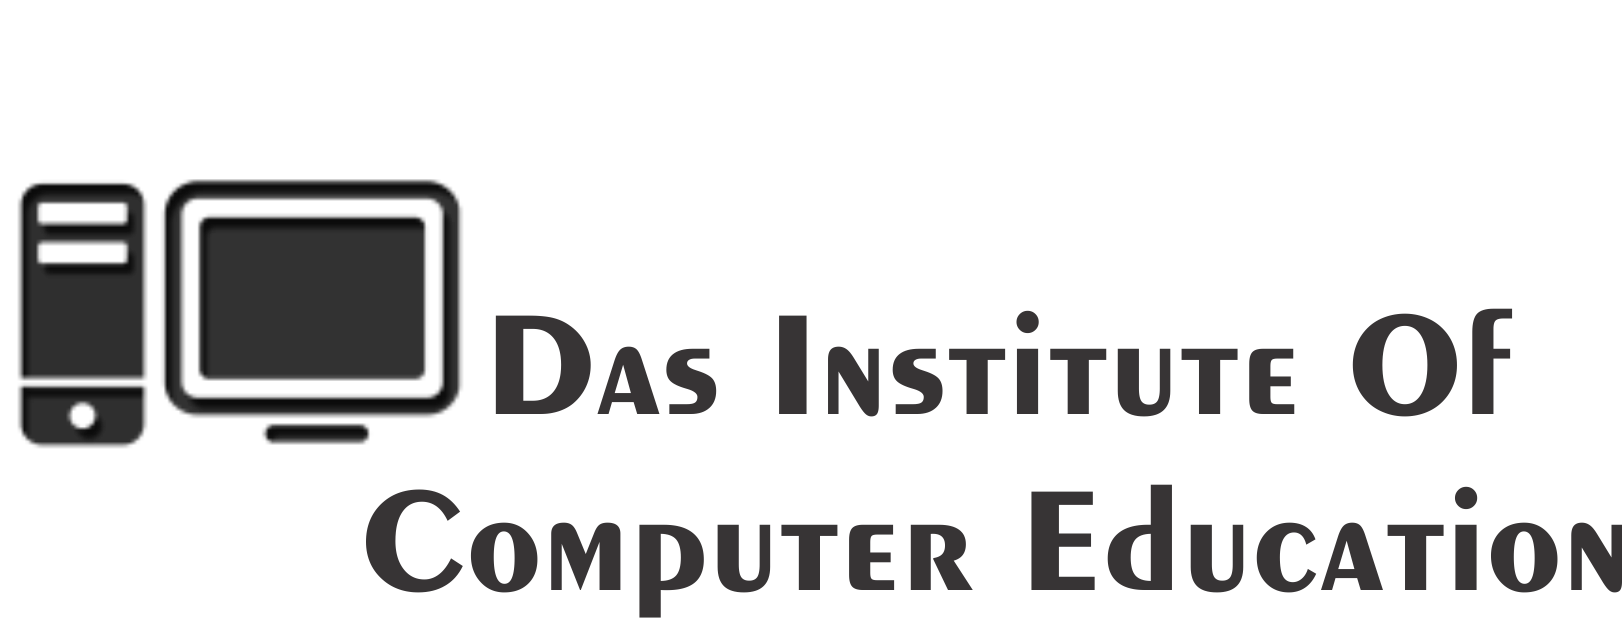 DAS INSTITUTE OF COMPUTER EDUCATION